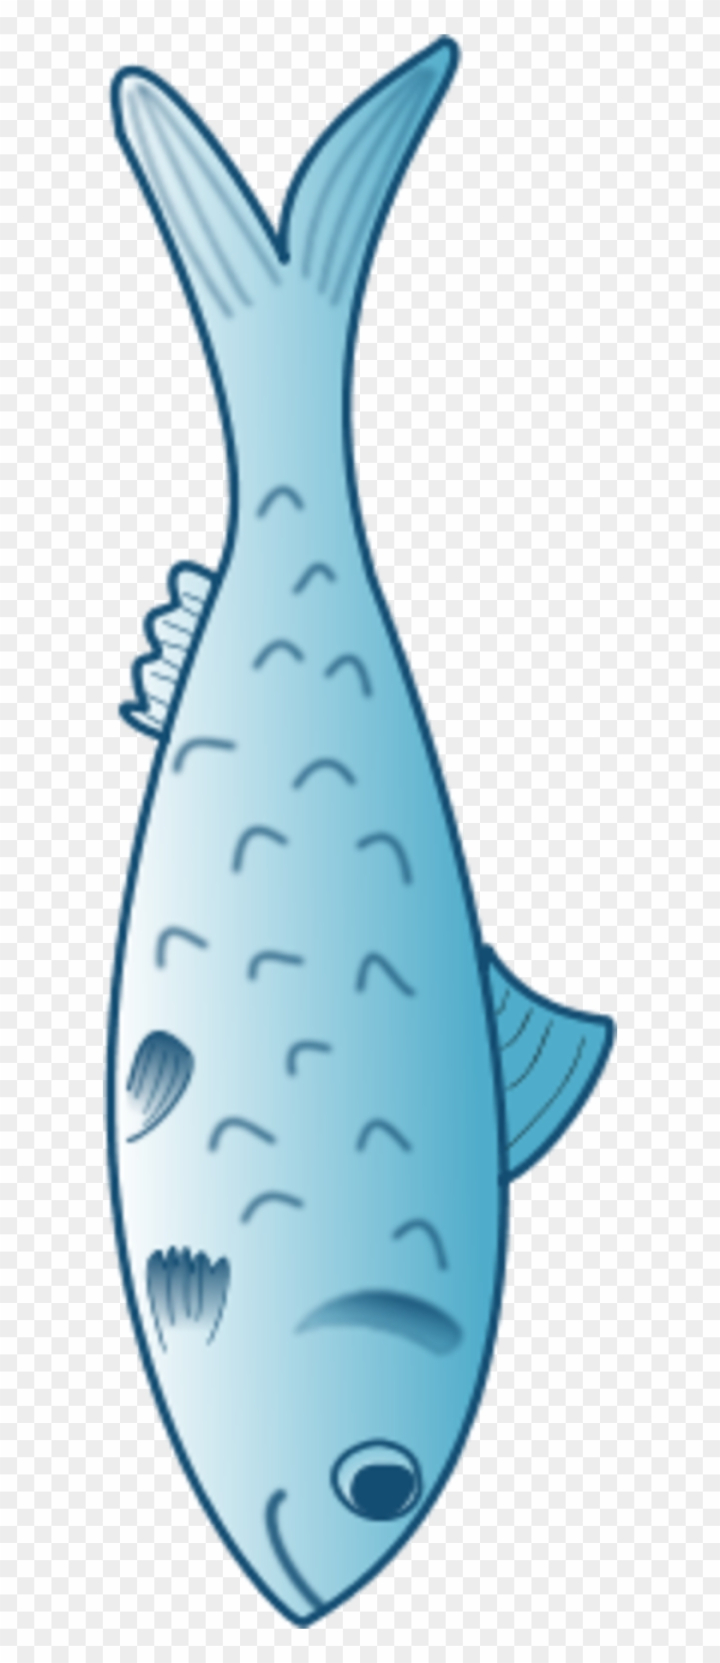 Free: Astonishing Blue Fish Clip Art Medium Size - Fish Food Clip Art 